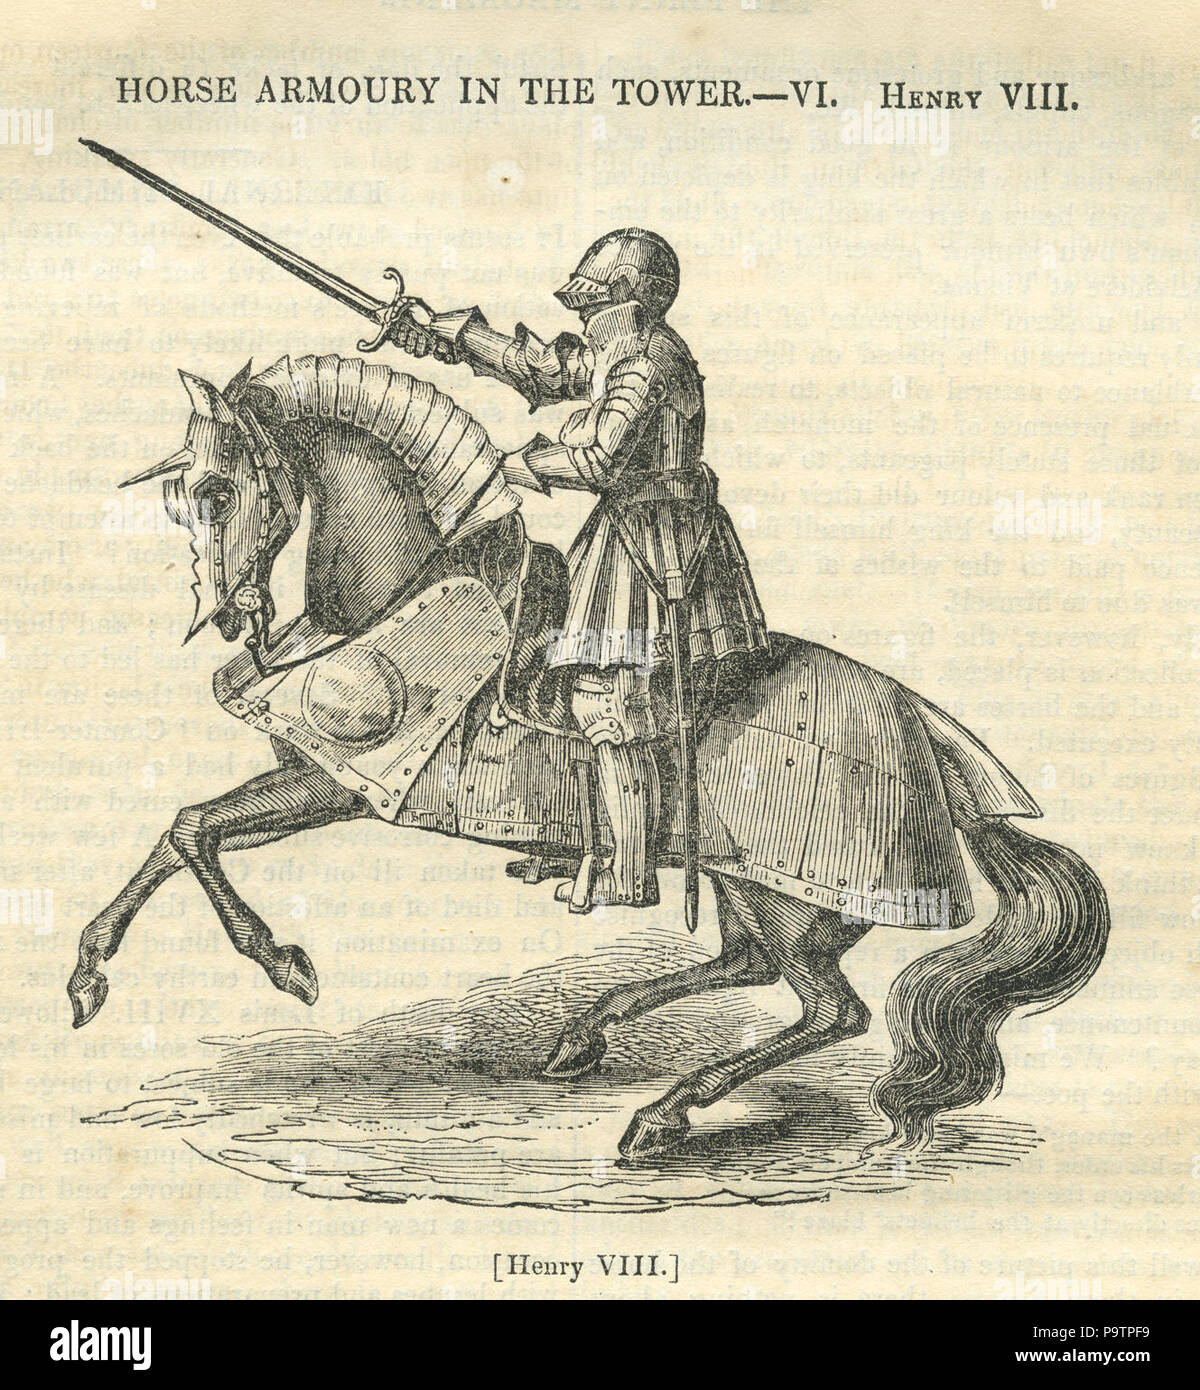 Incisione di "Horse Armoury in the Tower, vi, Enrico VIII" in armatura a cavallo dal Penny Magazine 1840 Foto Stock